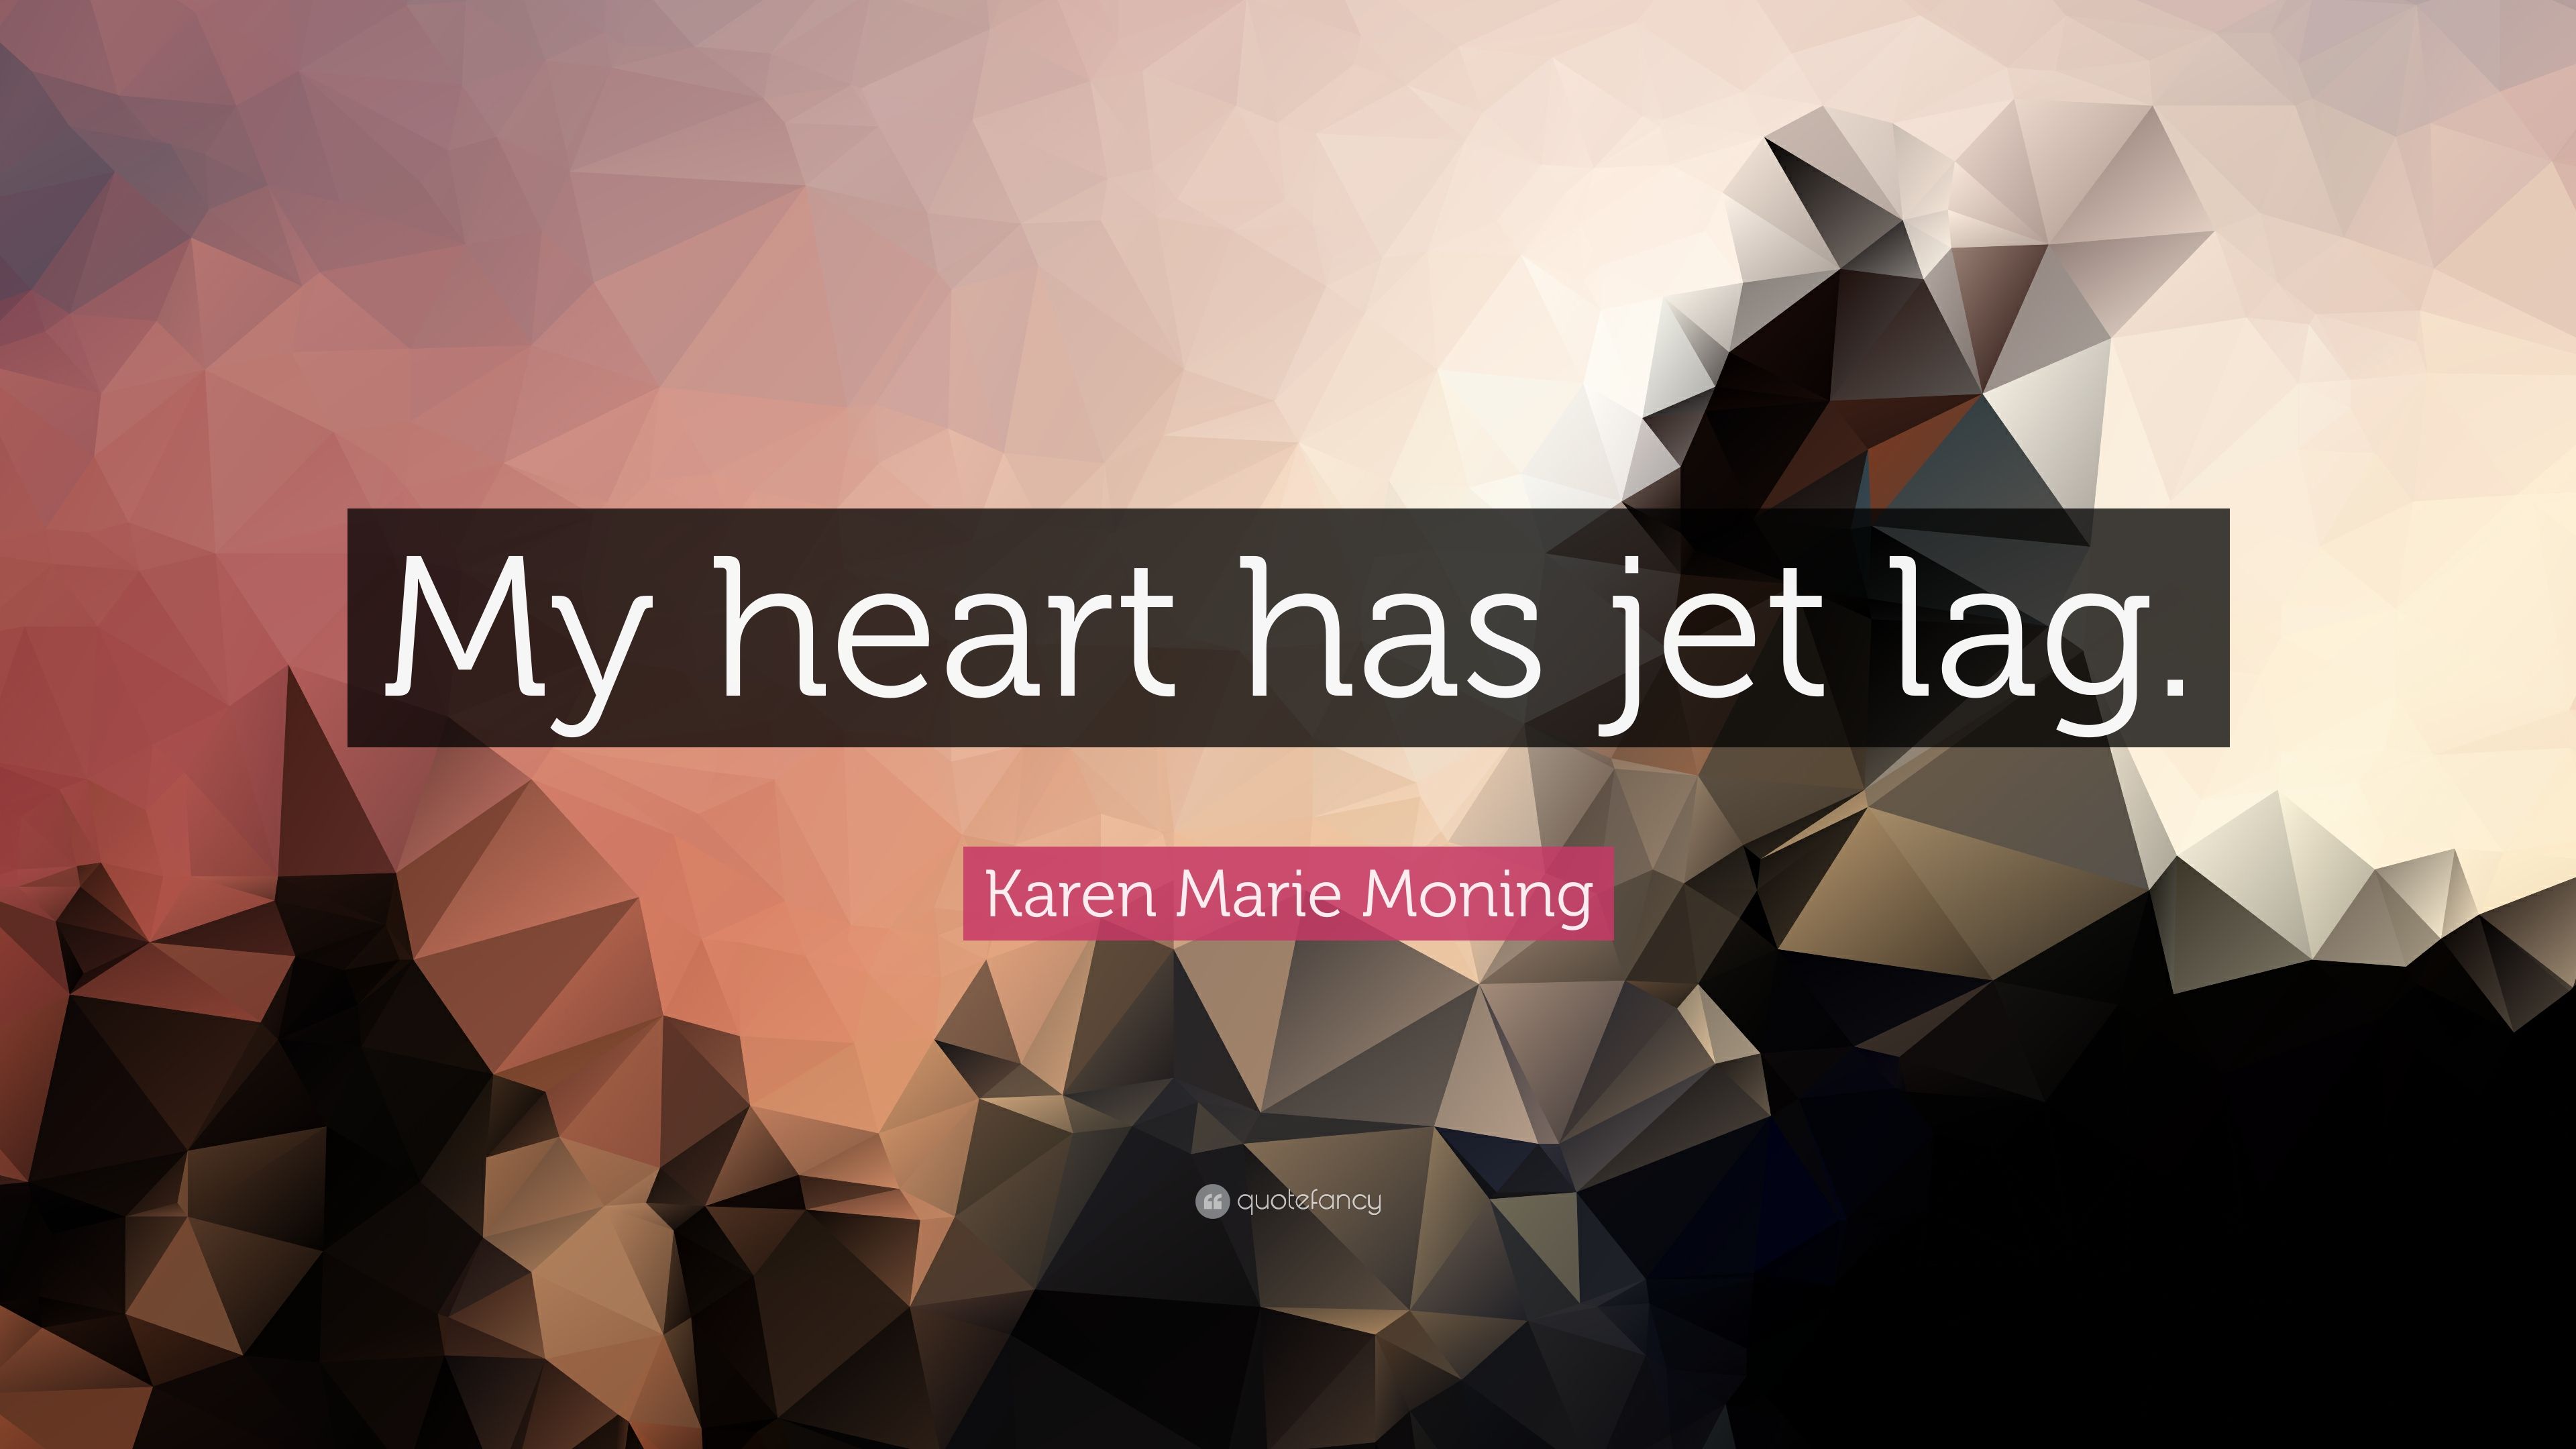 Karen Marie Moning Quote: “My heart has jet lag.” (7 wallpaper)